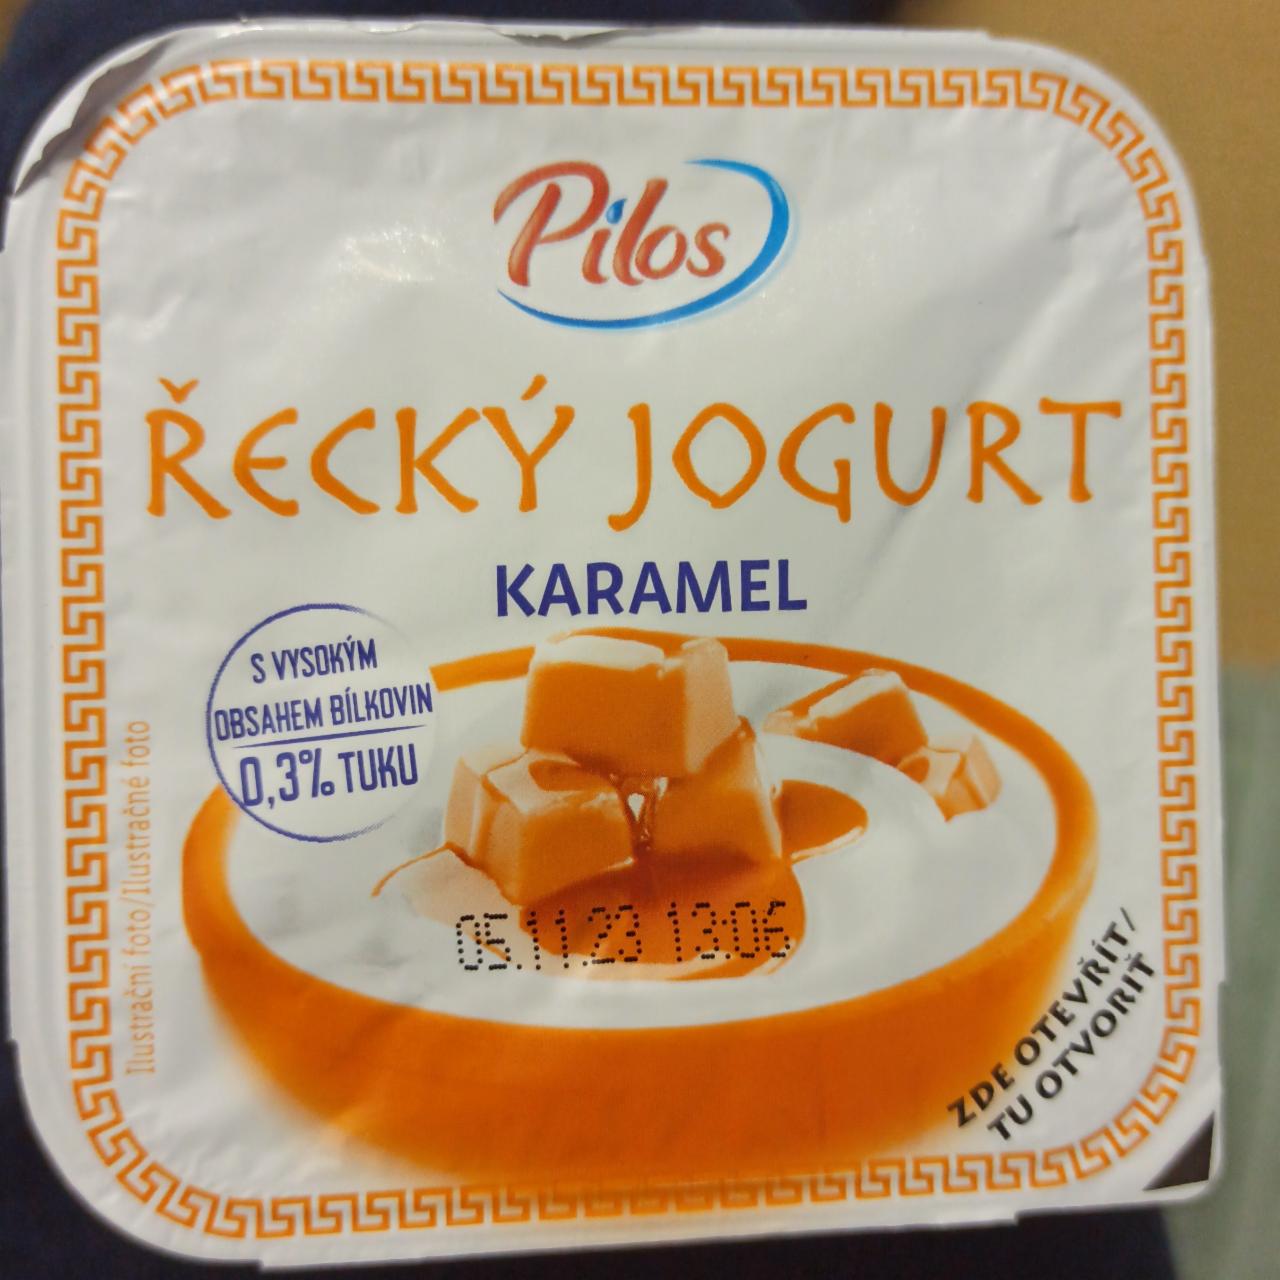 Fotografie - Grécky jogurt Karamel Pilos